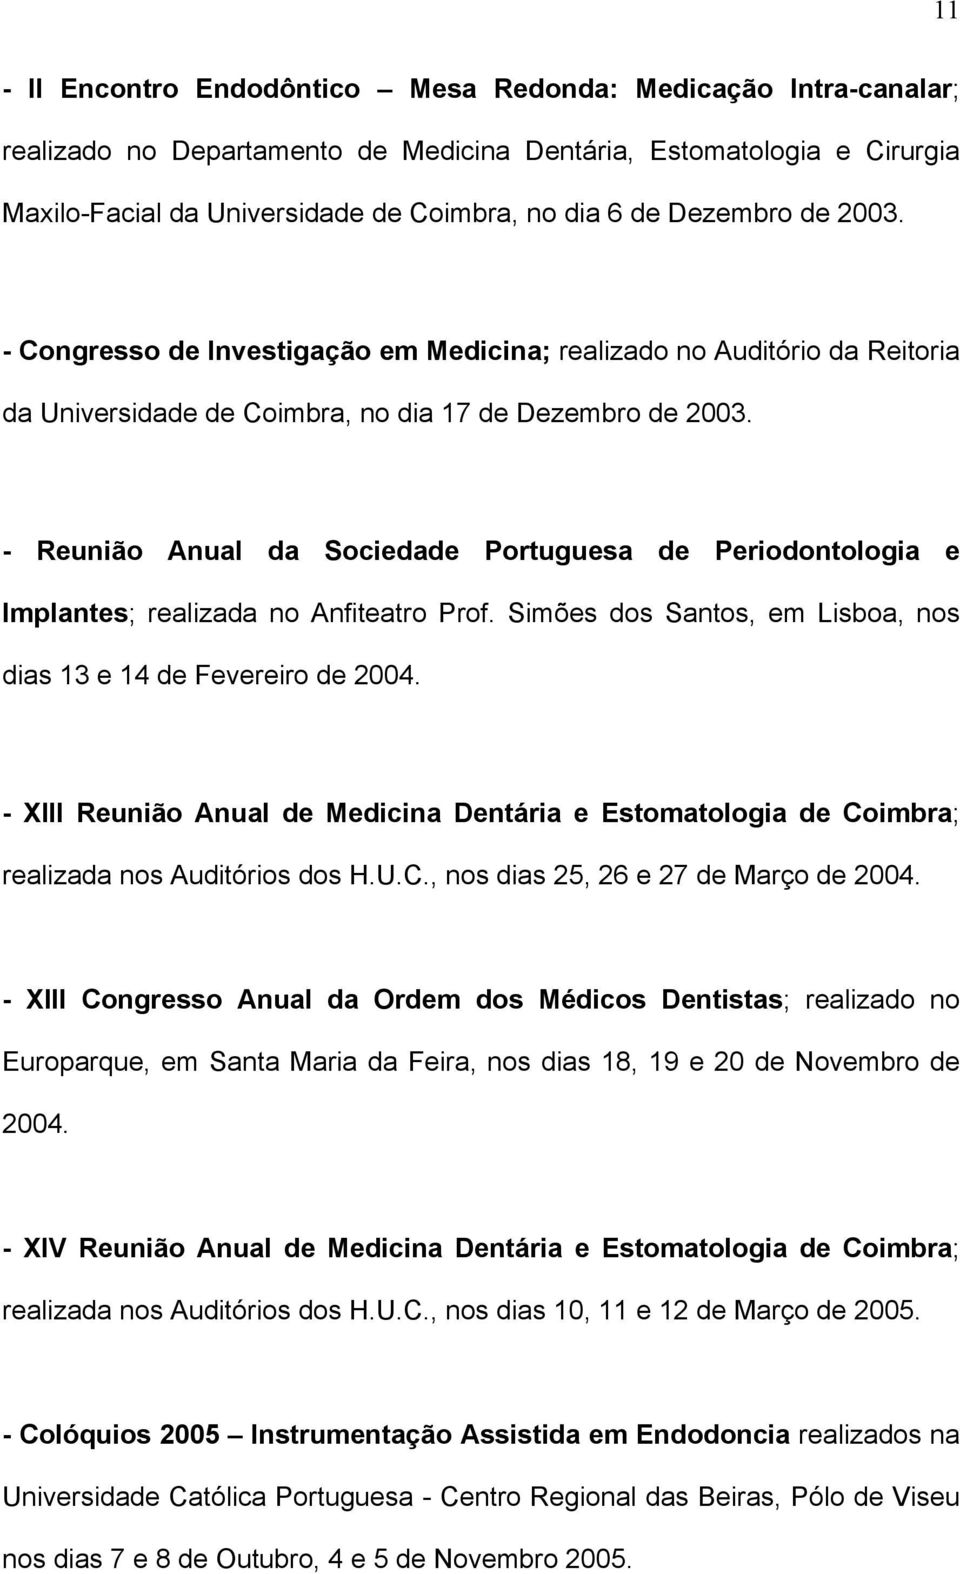 - Reunião Anual da Sociedade Portuguesa de Periodontologia e Implantes; realizada no Anfiteatro Prof. Simões dos Santos, em Lisboa, nos dias 13 e 14 de Fevereiro de 2004.